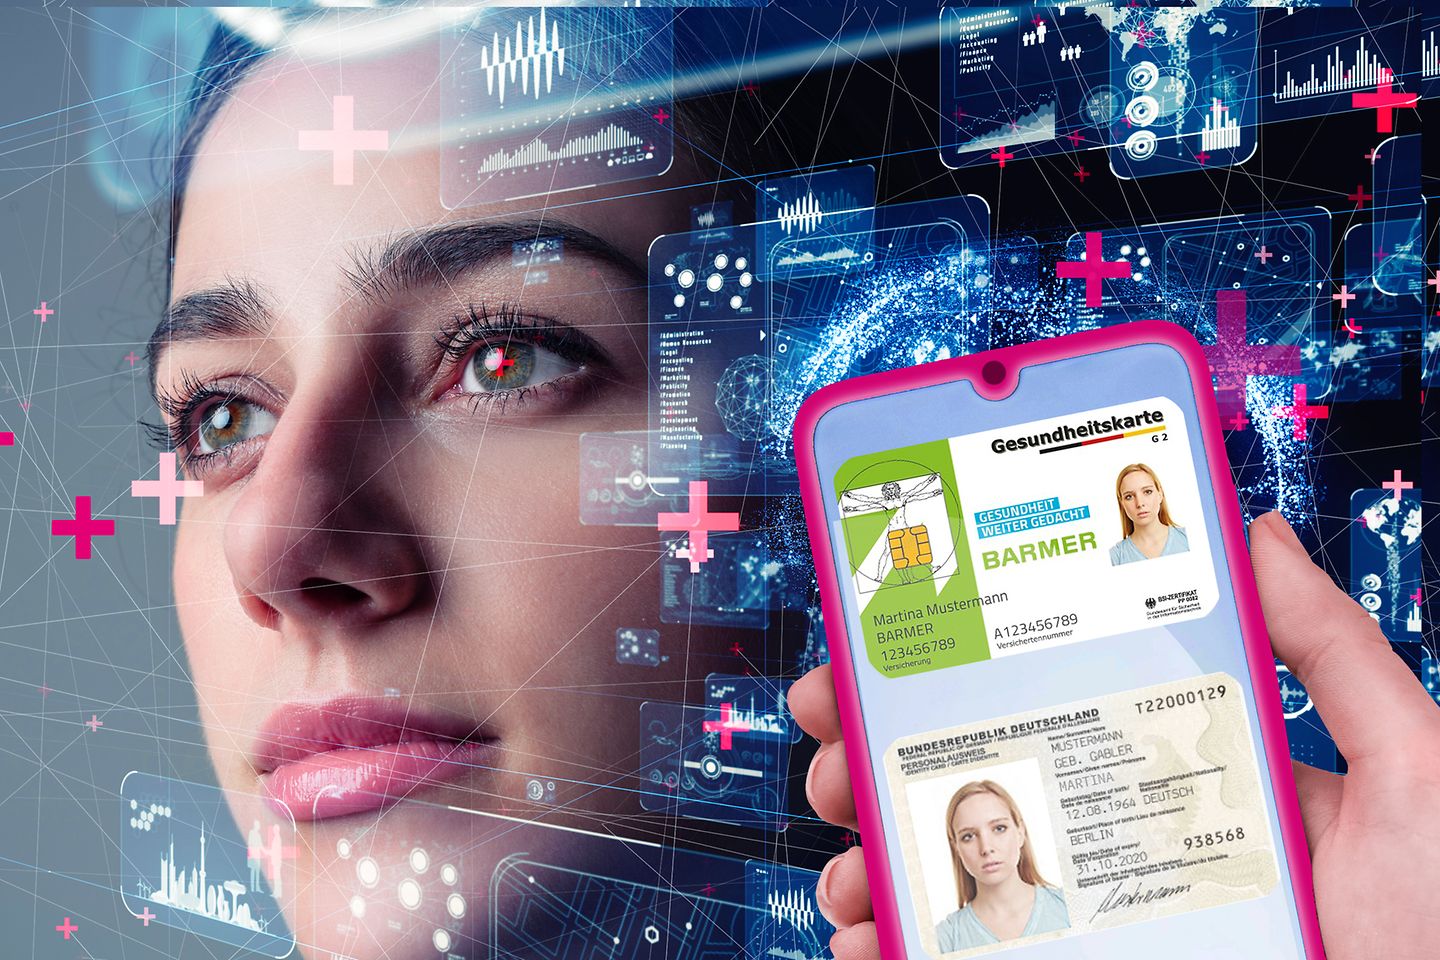 Rostro de una mujer con superposición digital y smartphone con tarjeta sanitaria